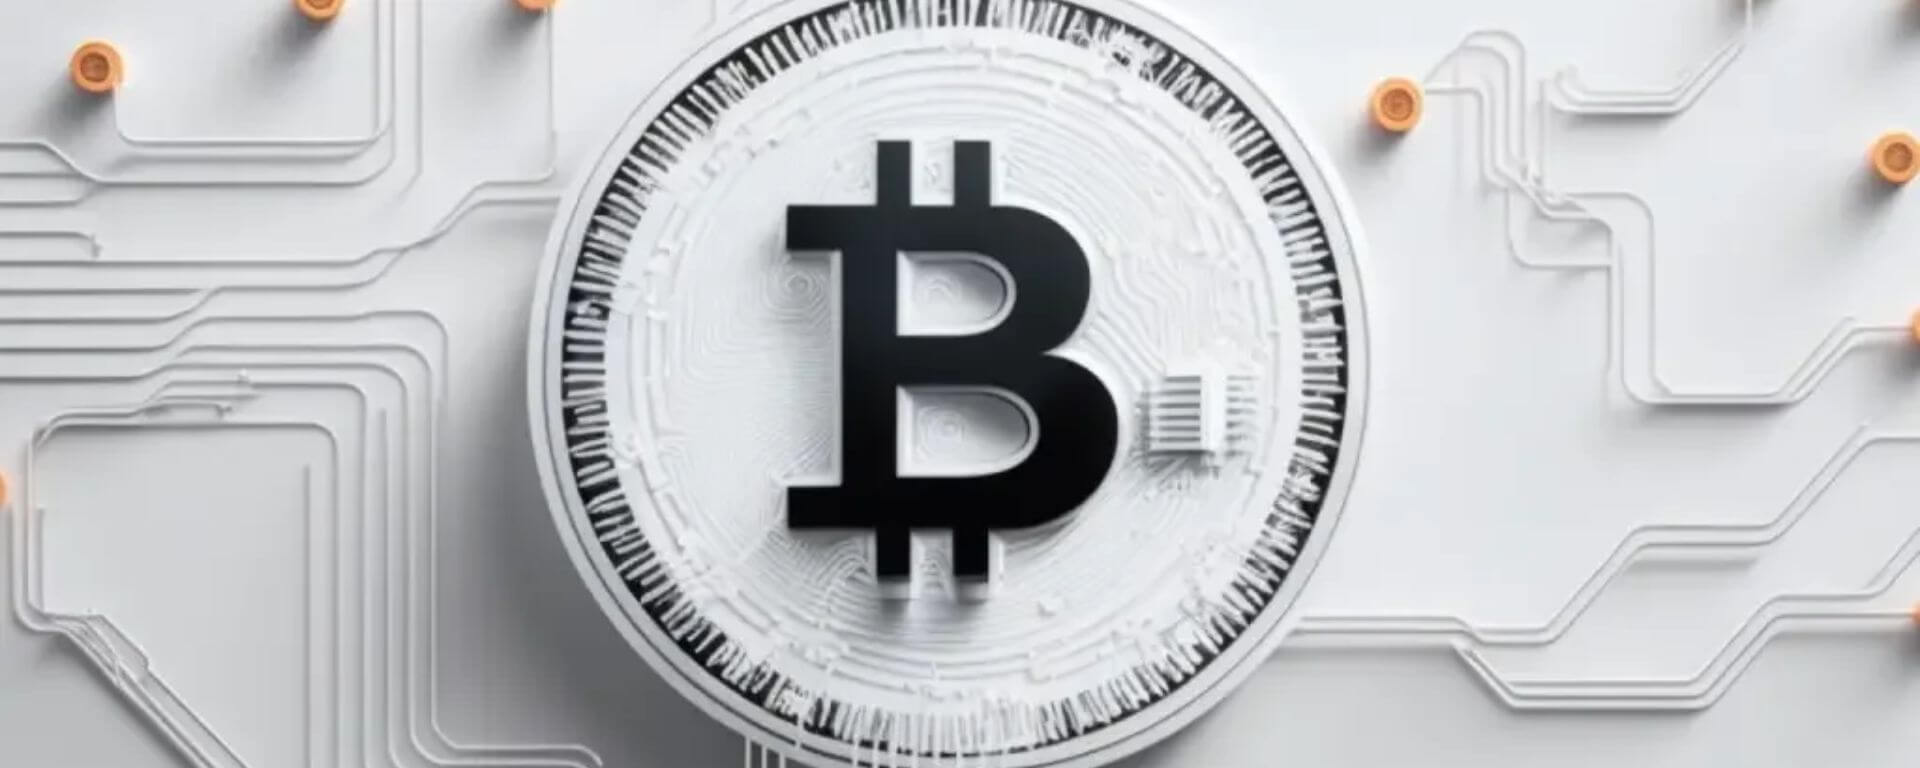 Glassnode: Mega baleias do Bitcoin estão se movendo em direção oposta ao resto do mercado